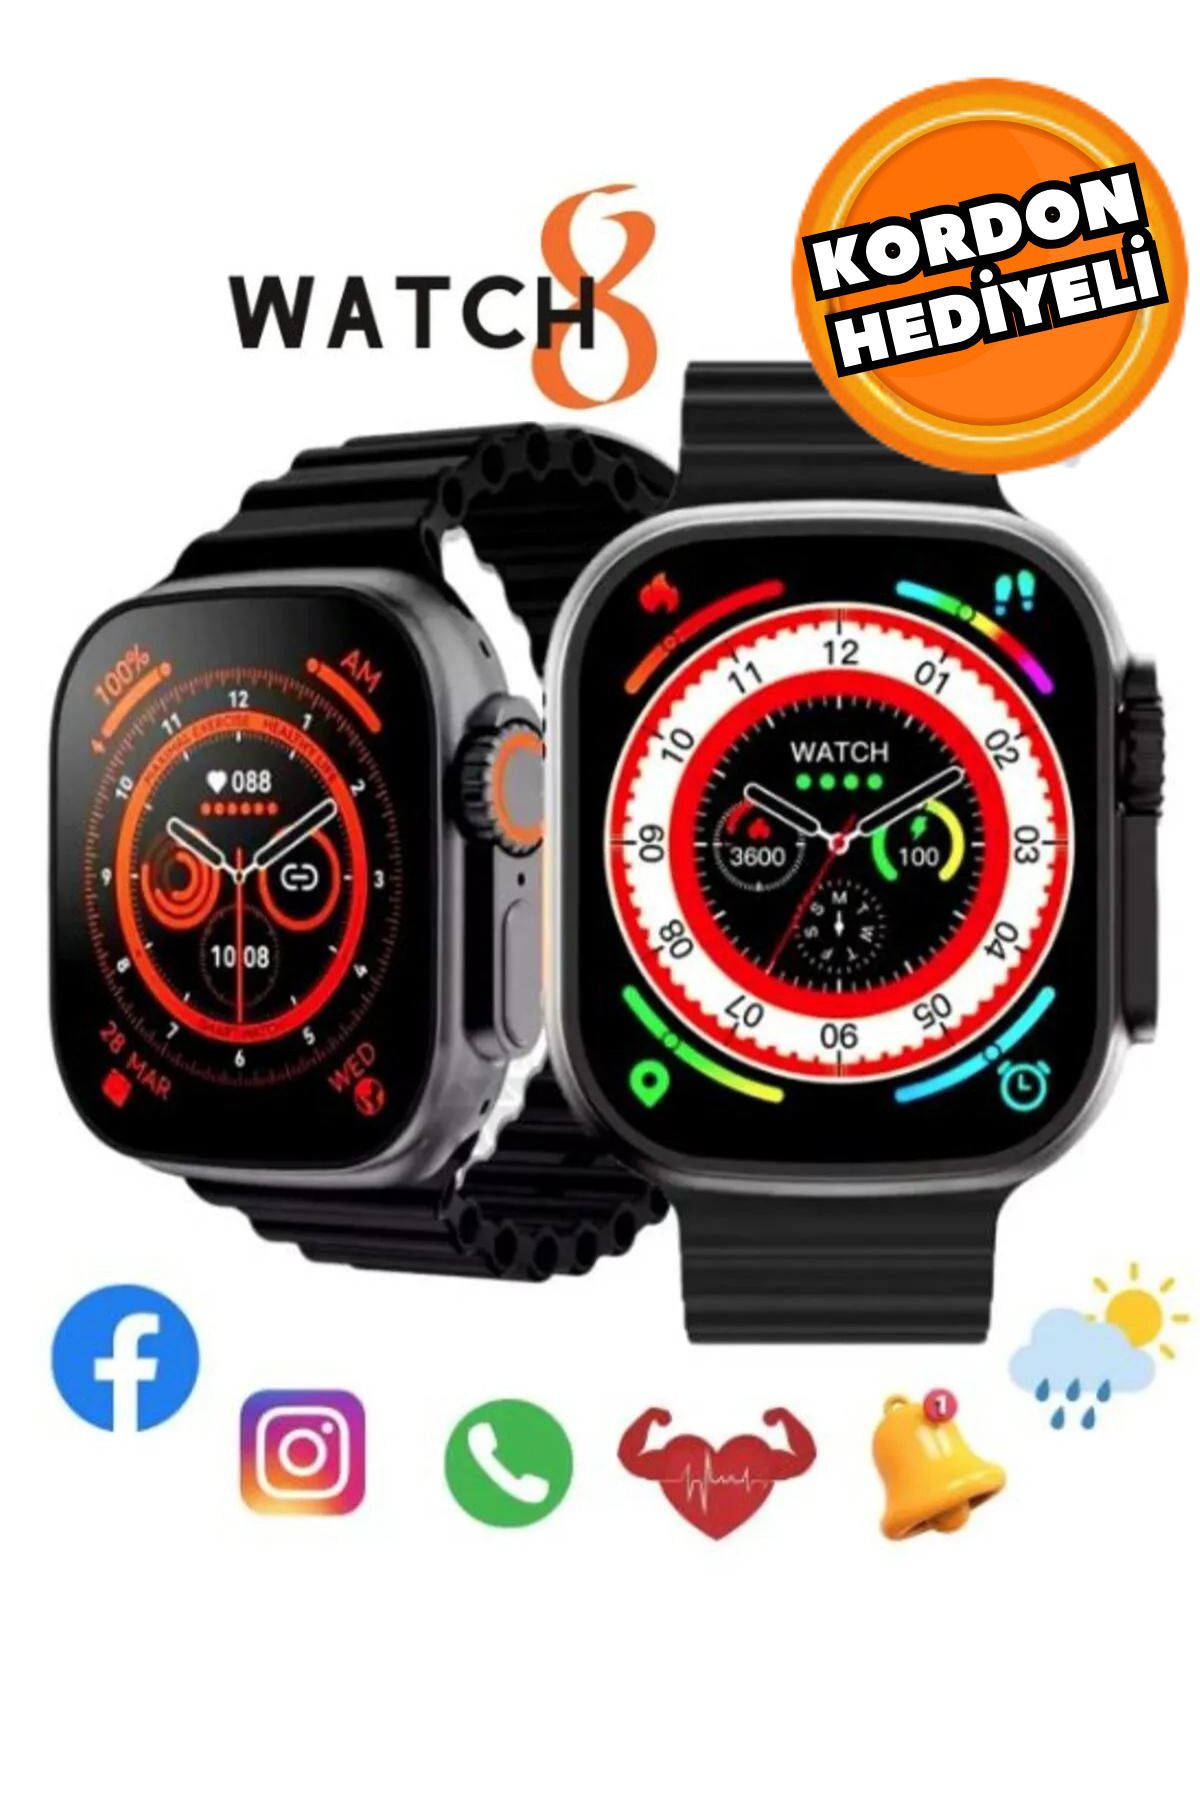 Favors Watch 8 Ultra Siyah Akıllı Saat Arama Yapma, Sensörlü, Spor Mod, Bildirim, Türkçe Smart Watch